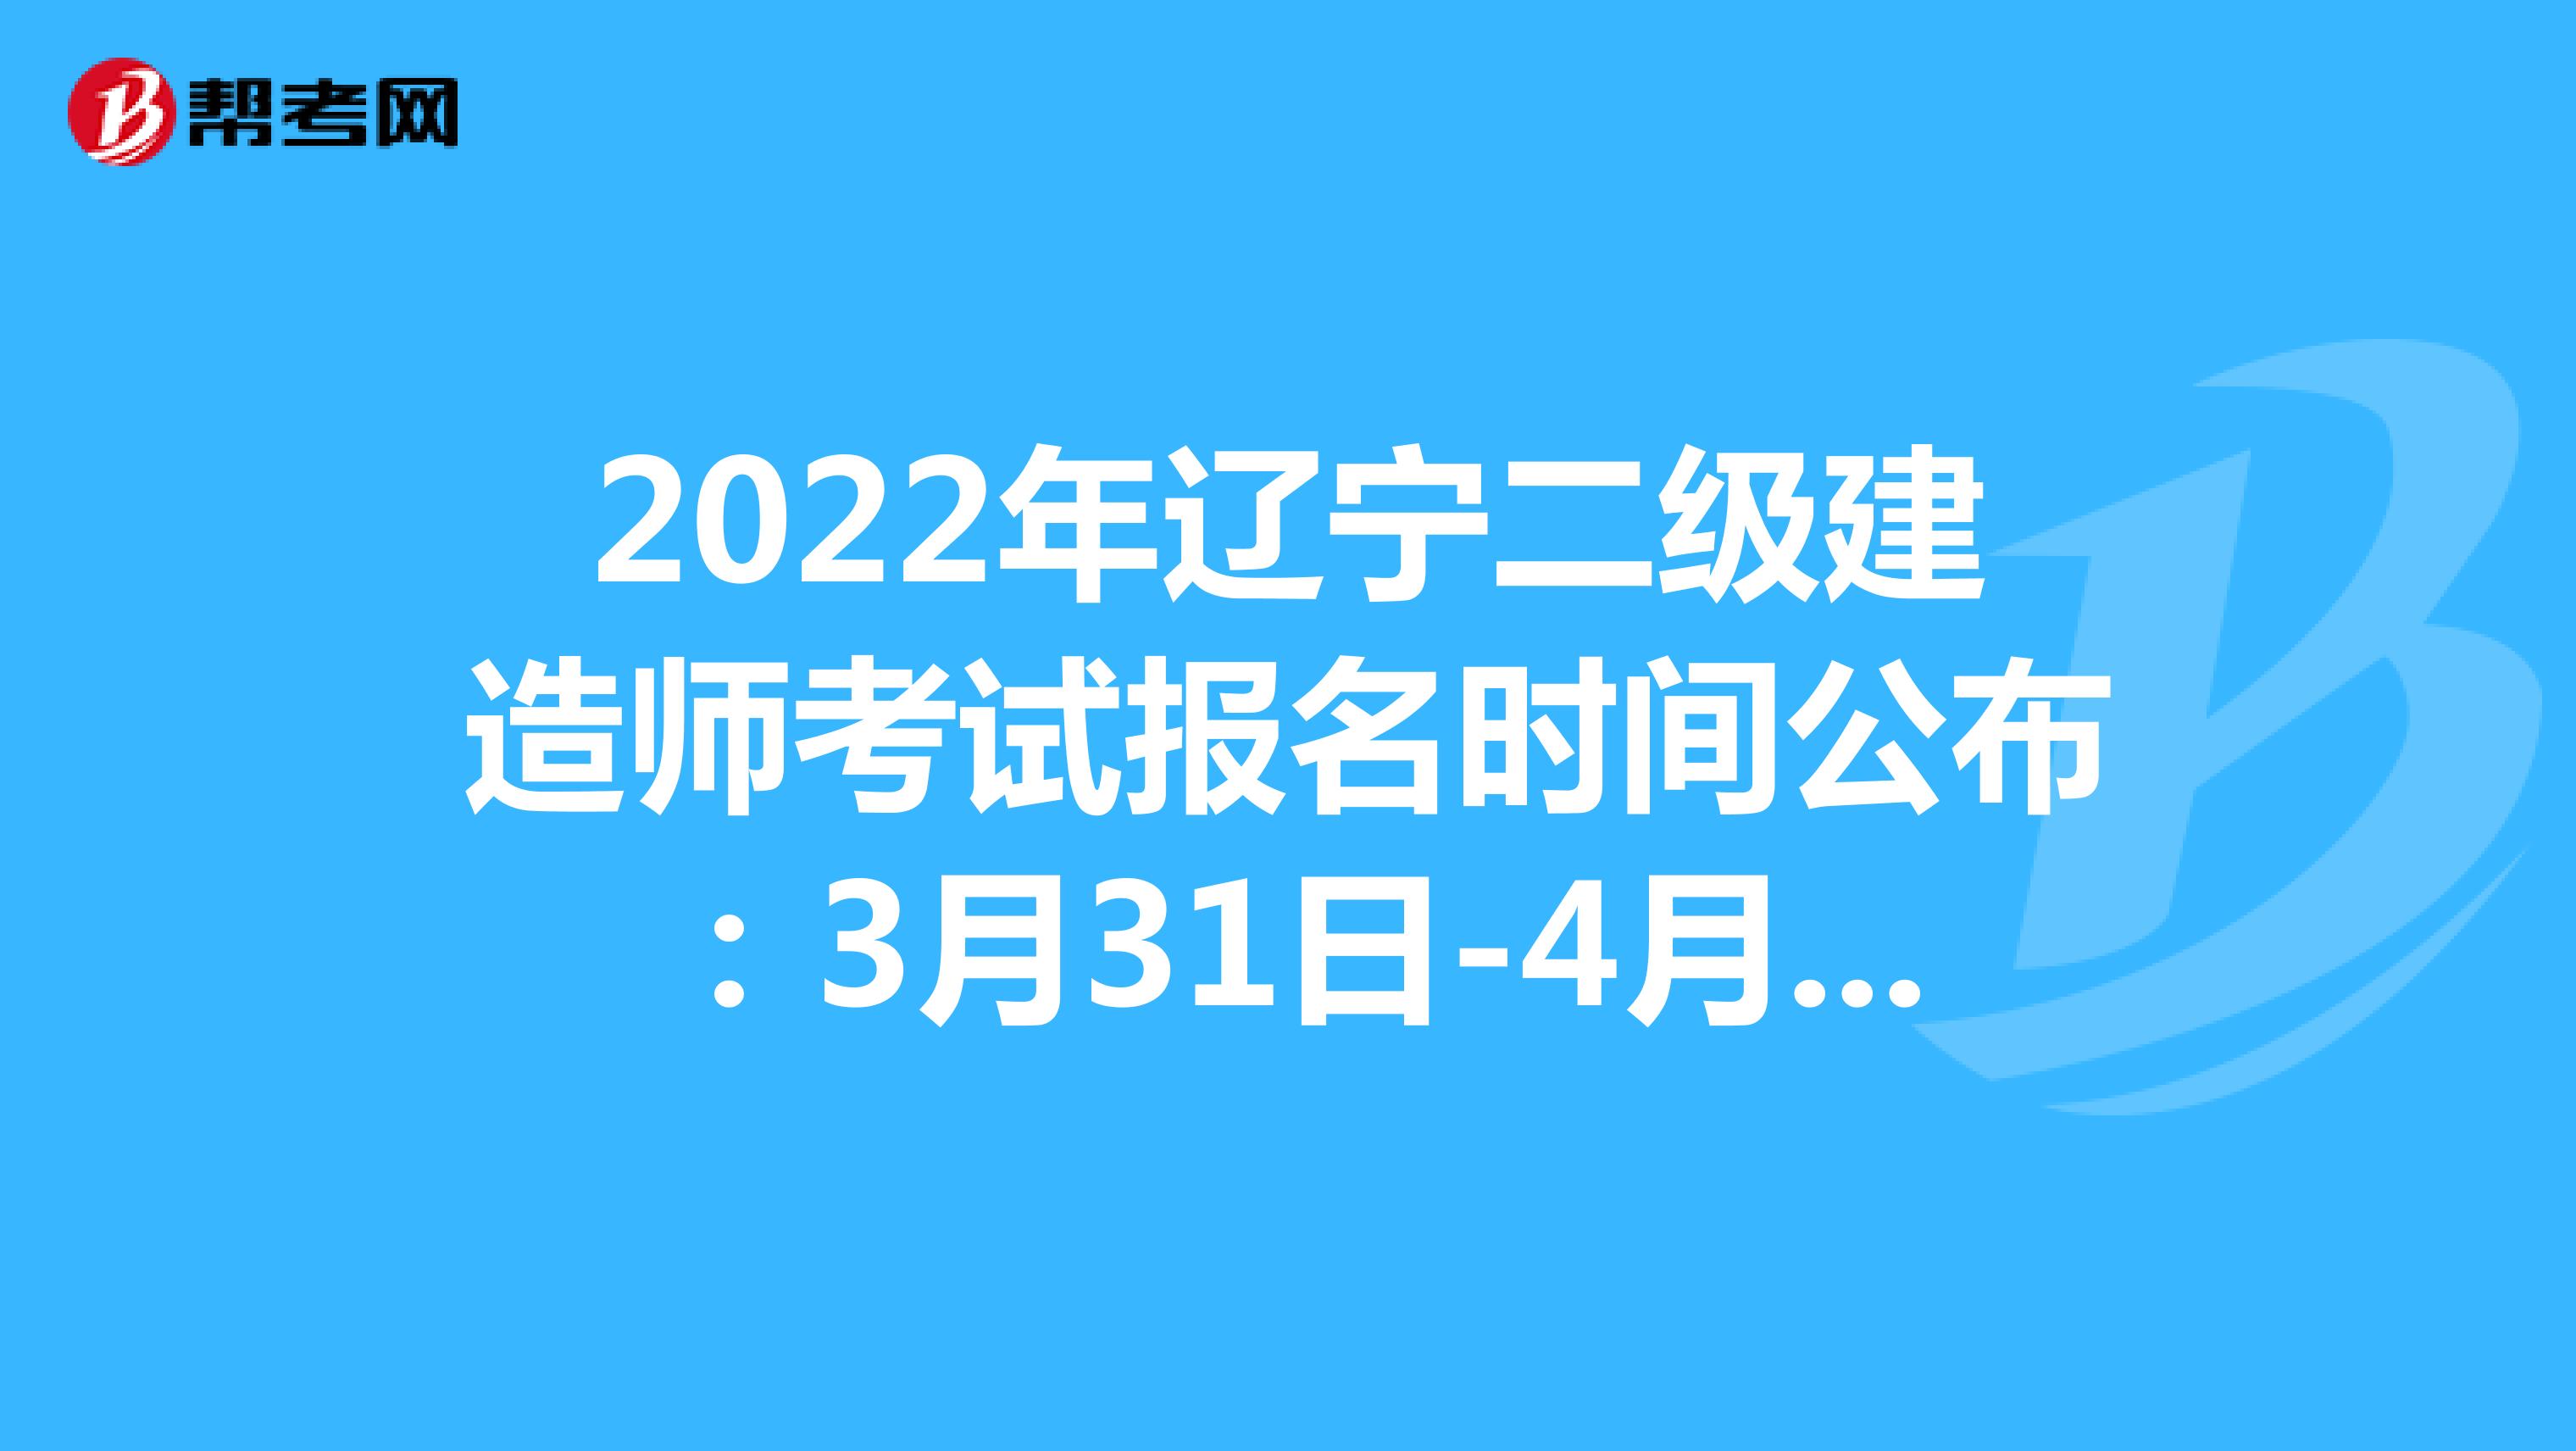 2022年遼寧二級建造師考試報名時間公布：3月31日-4月10日